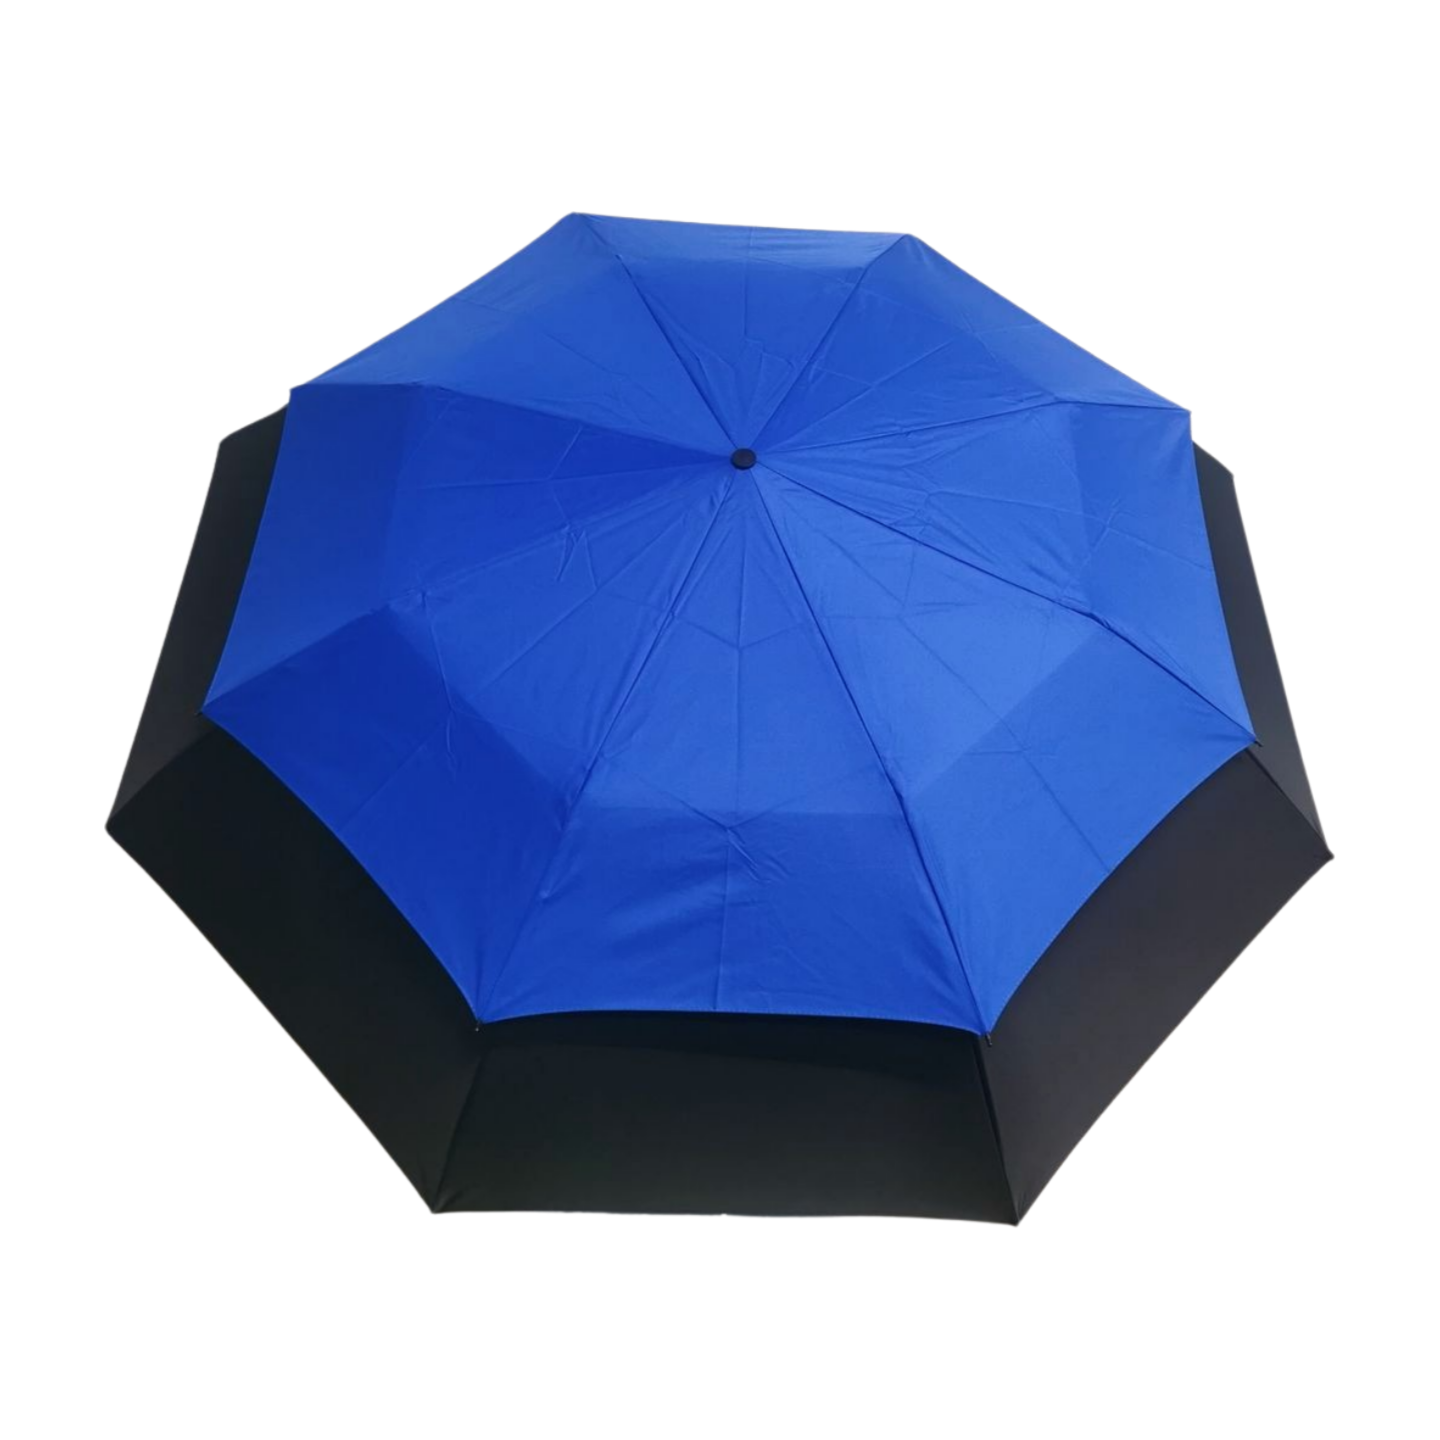 https://www.hodaumbrella.com/double-layers-…lding-umbrella-product/